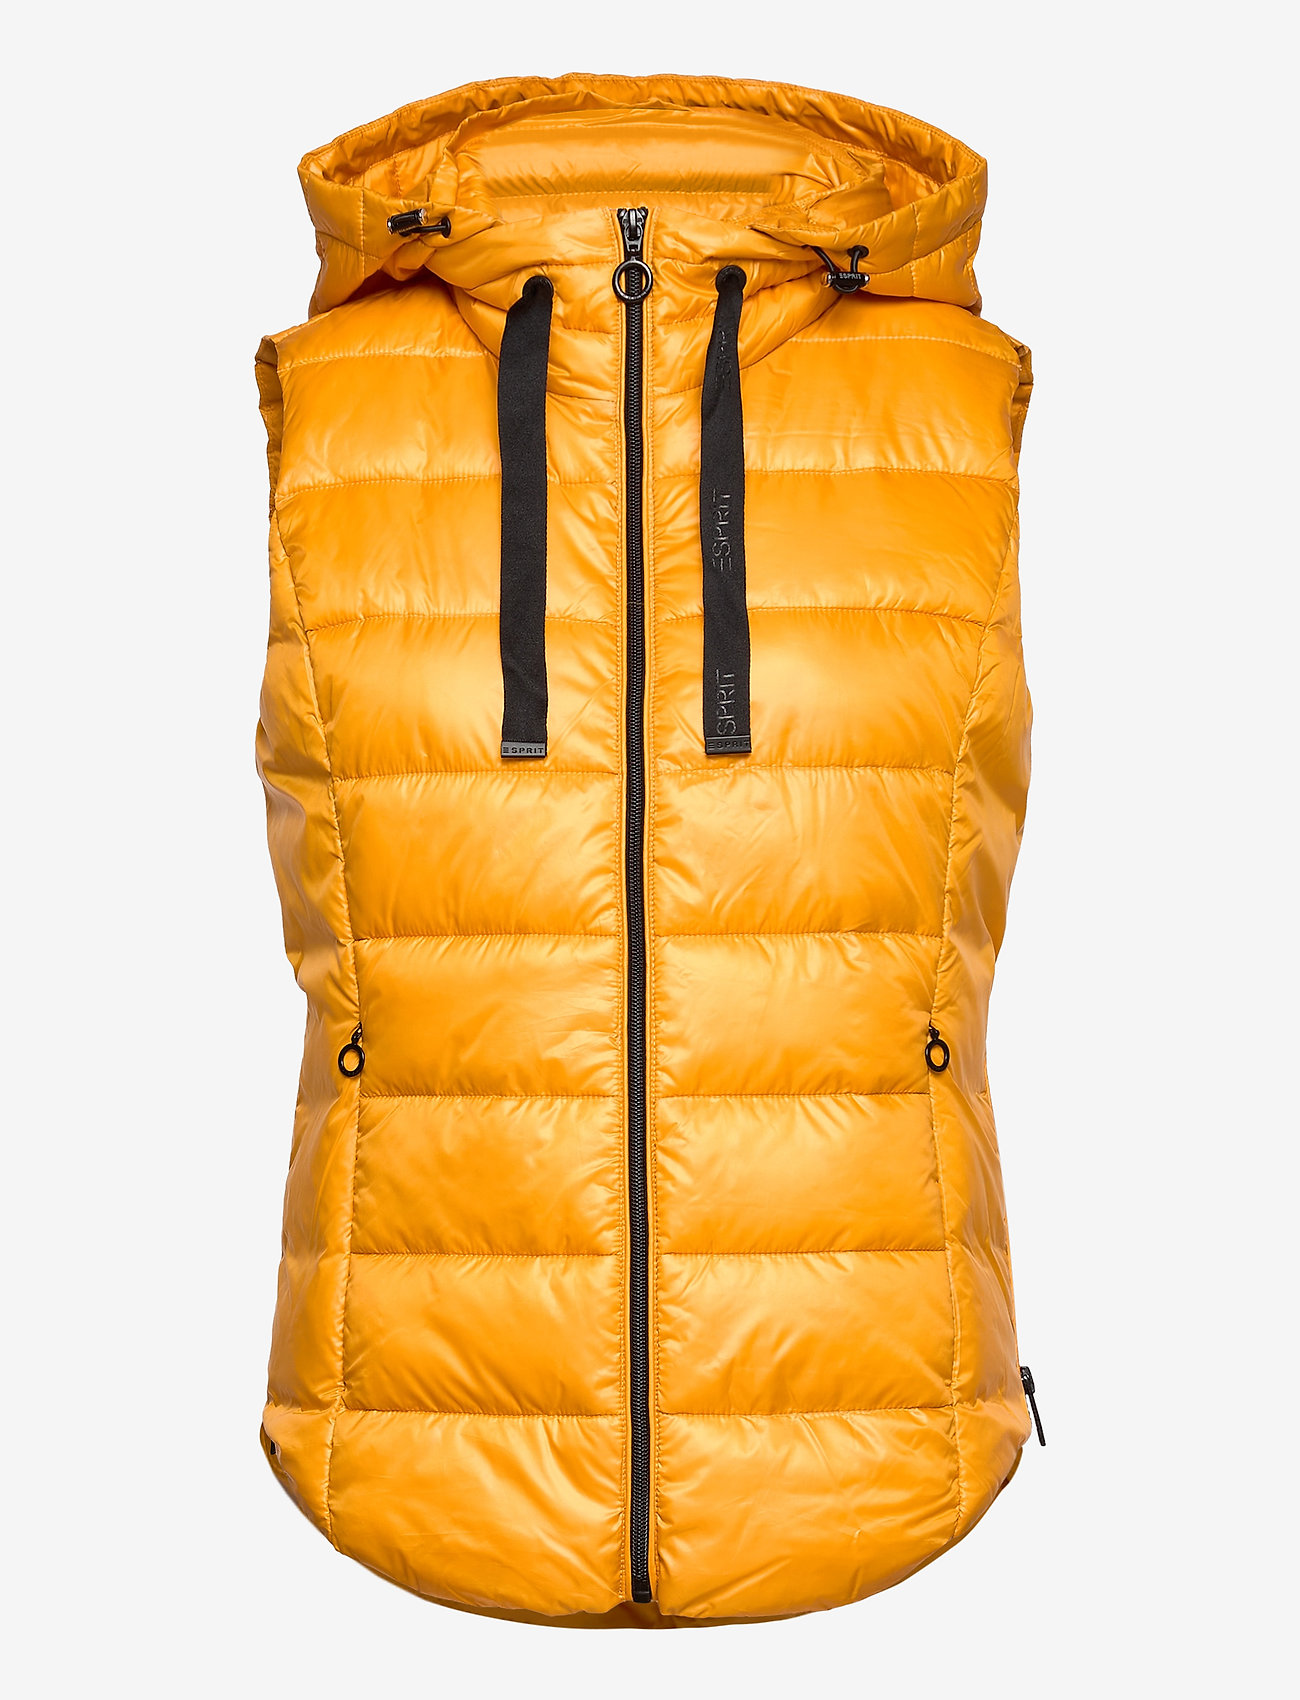 Esprit Casual - Vests outdoor woven - honey yellow - 0